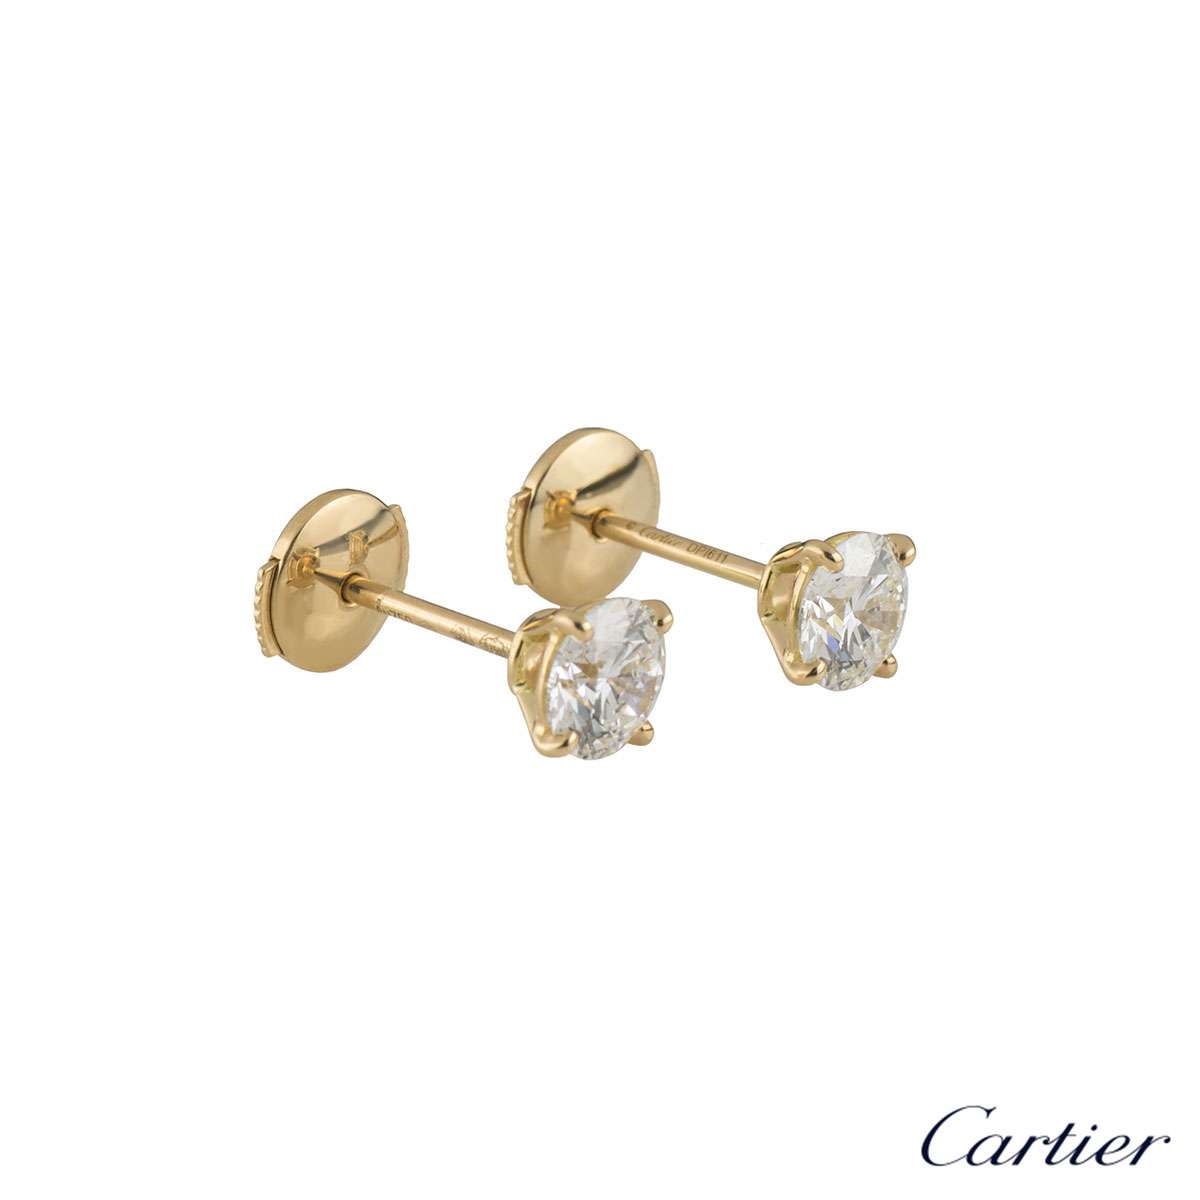 cartier men's earrings